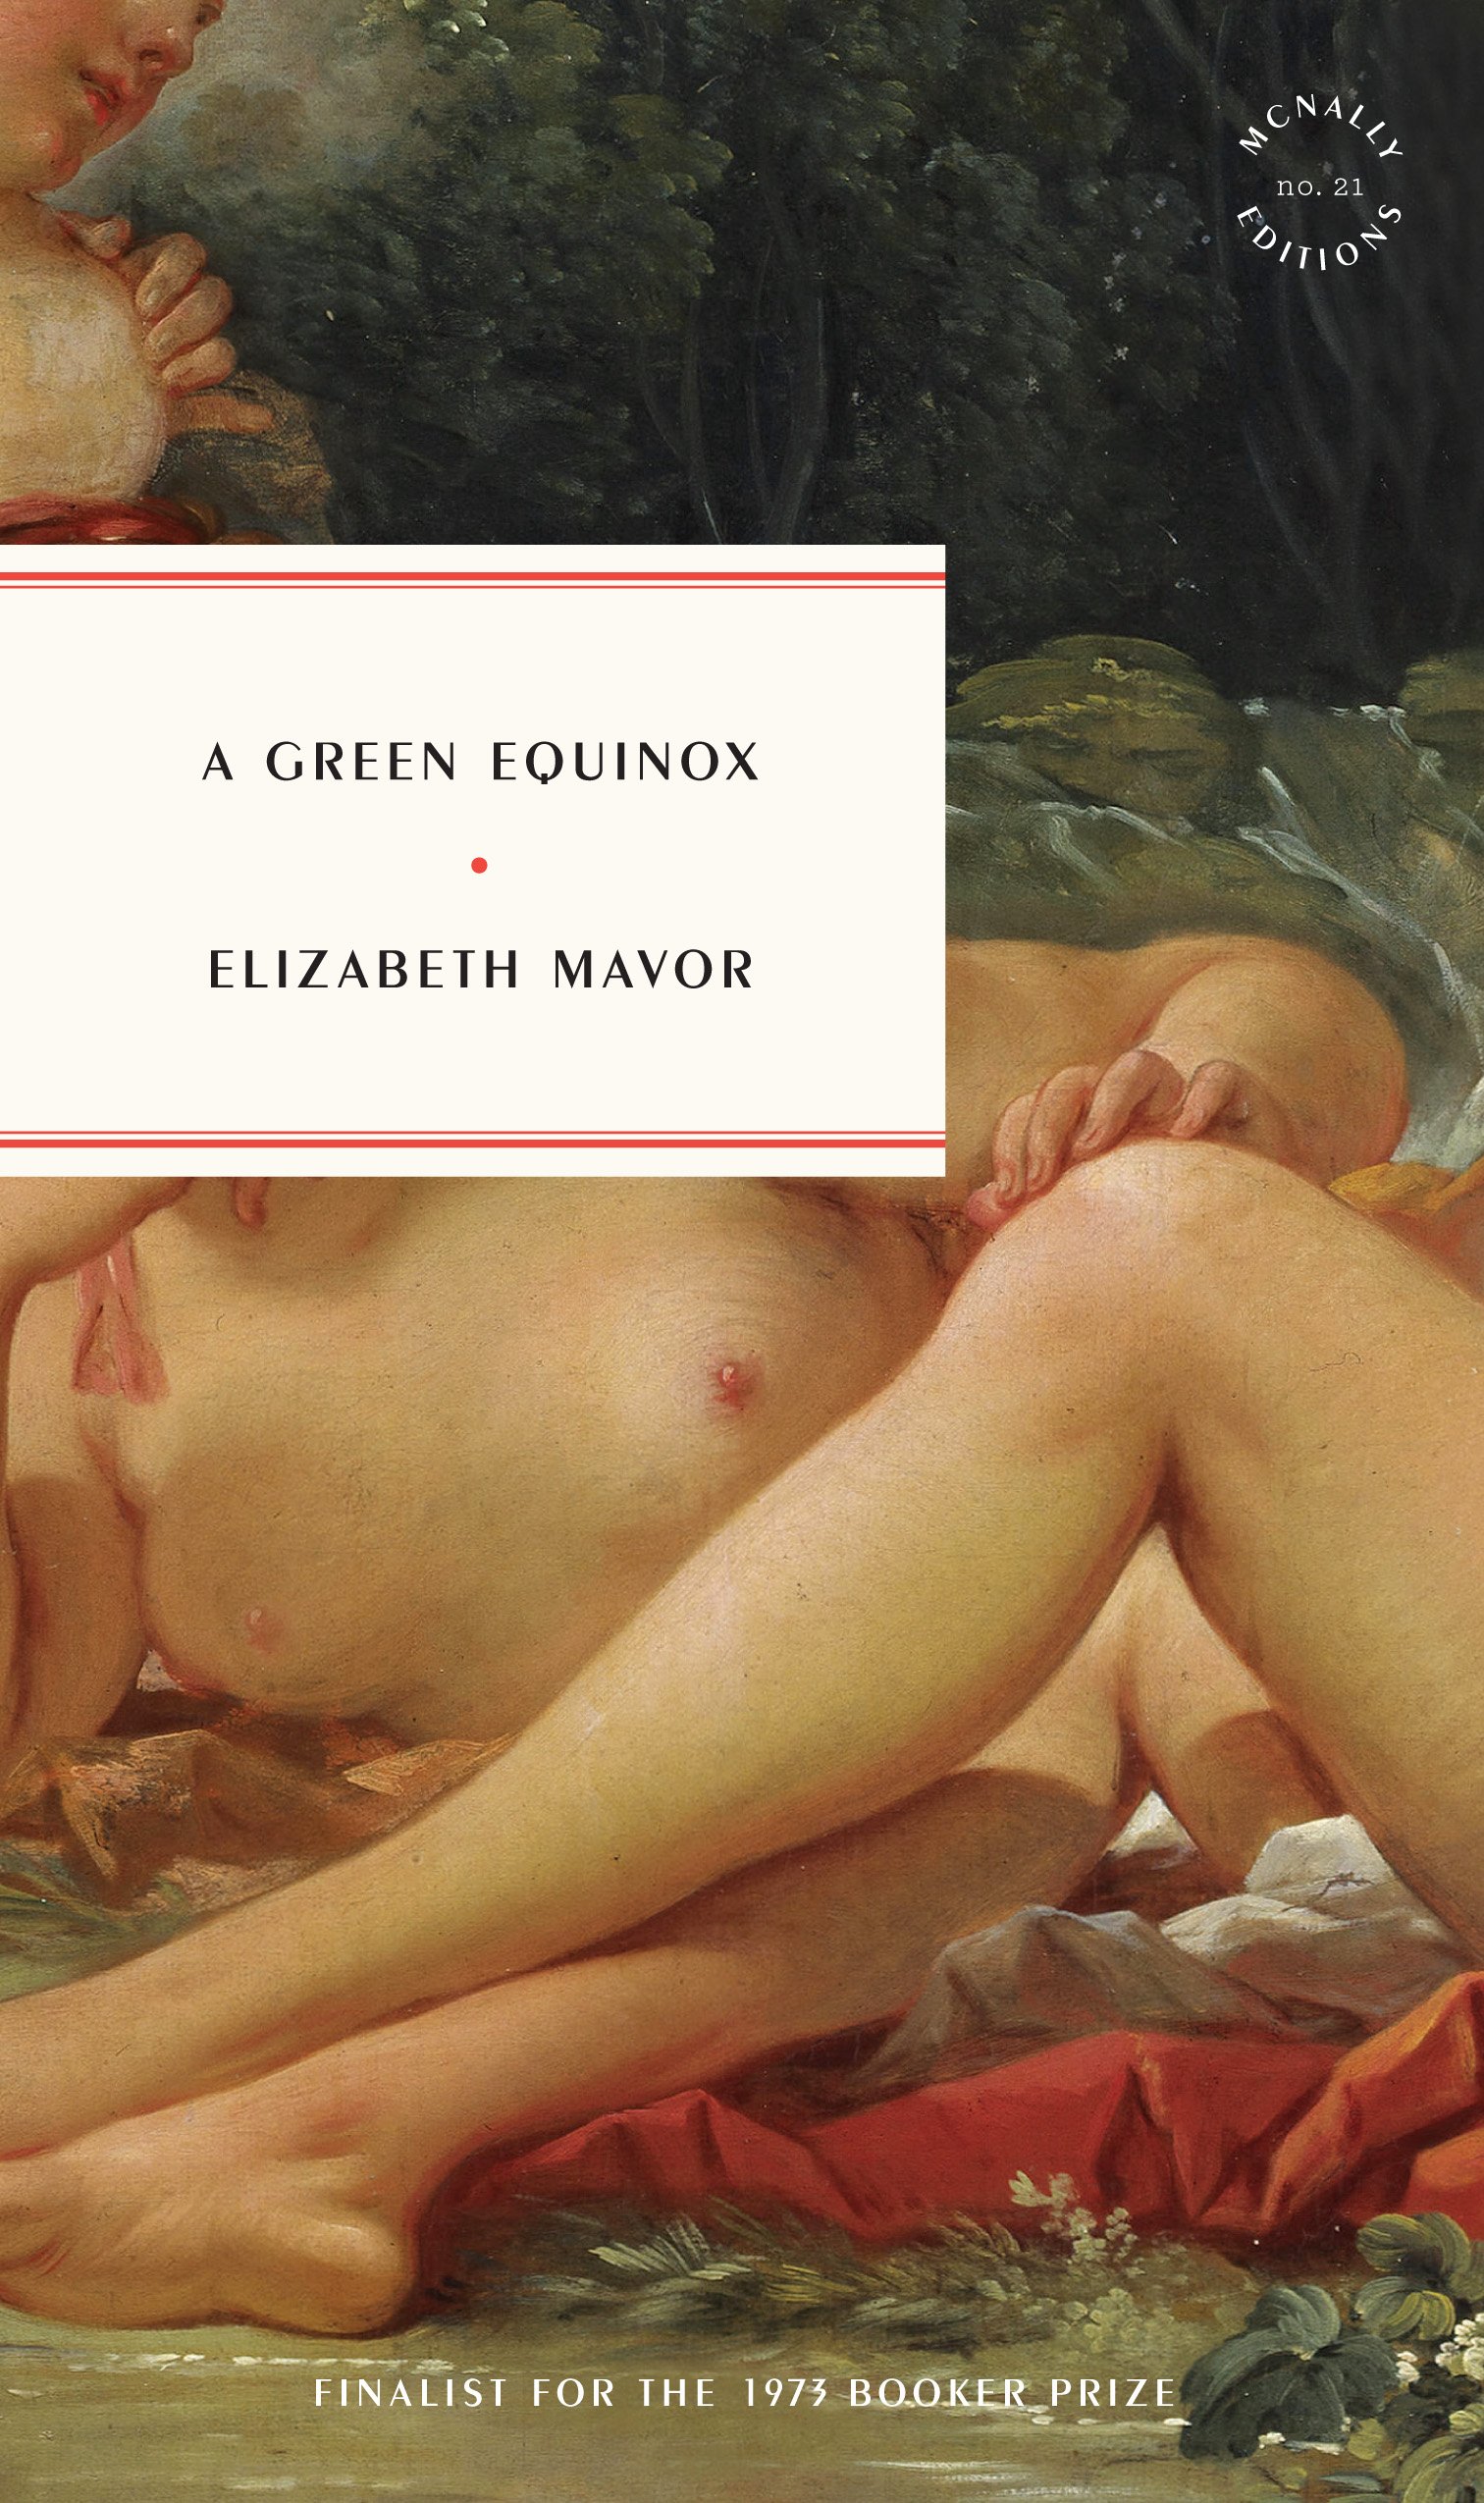 A Green Equinox by Elizabeth Mavor — McNALLY EDITIONS image image